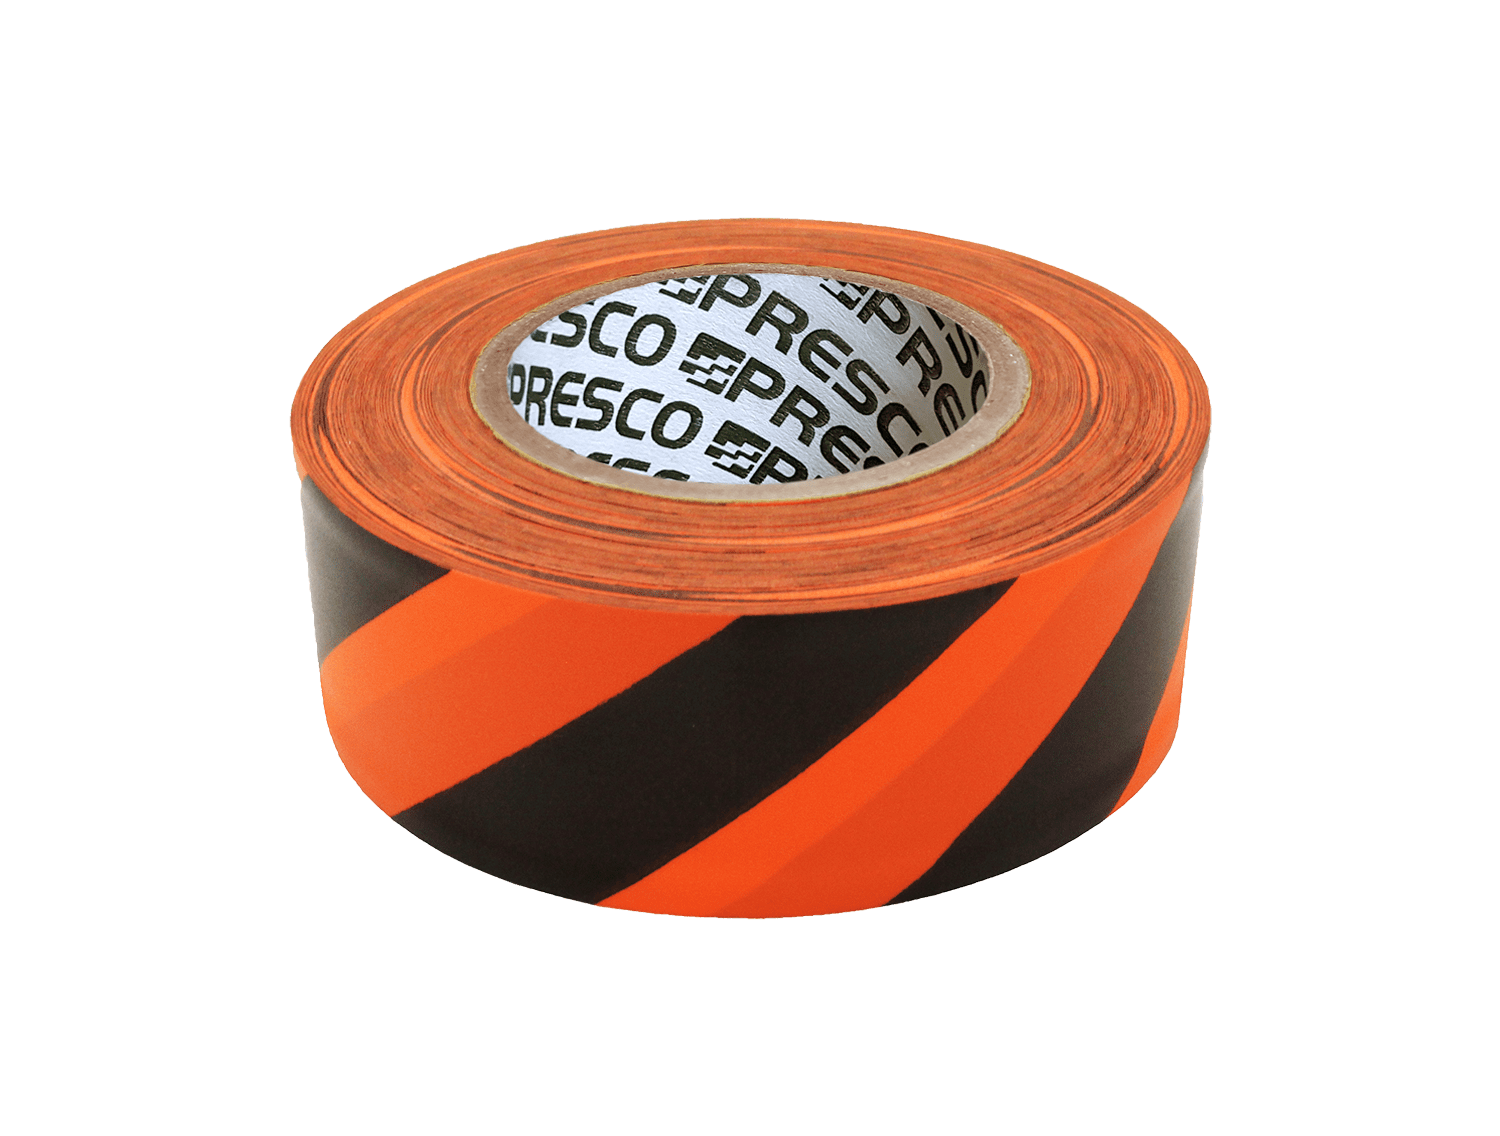 Presco Polka Dot Patterned Roll Flagging Tape x 50 yds. 1-3/16 in Neon Orange and Black Polka Dot 